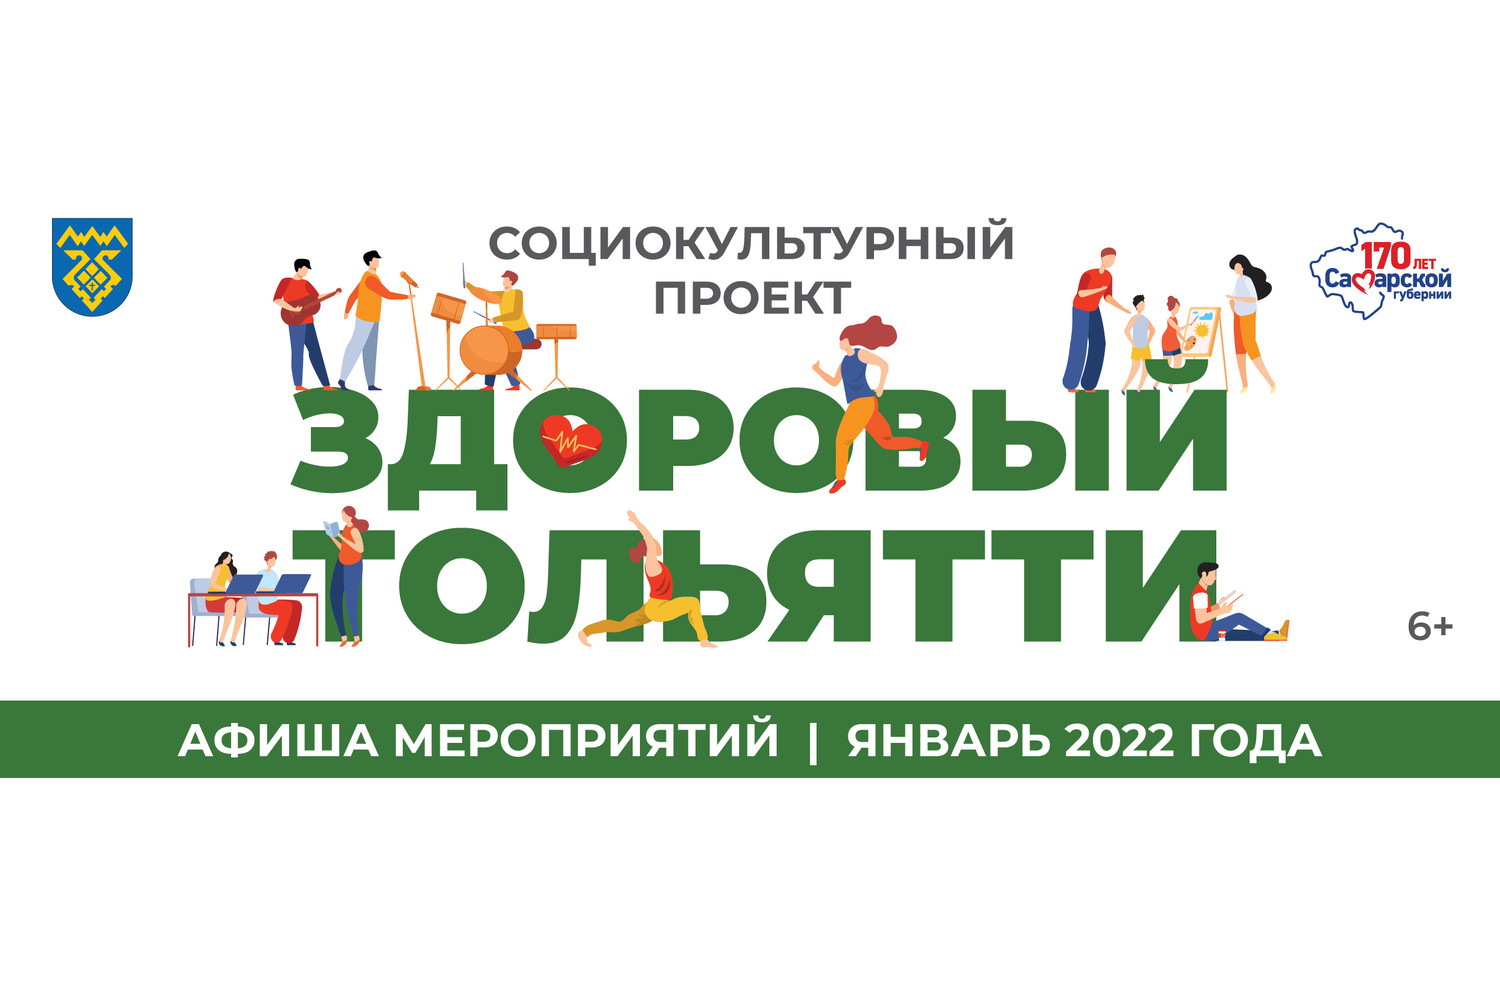 Афиша мероприятий городского социокультурного проекта «Здоровый Тольятти» на ЯНВАРЬ